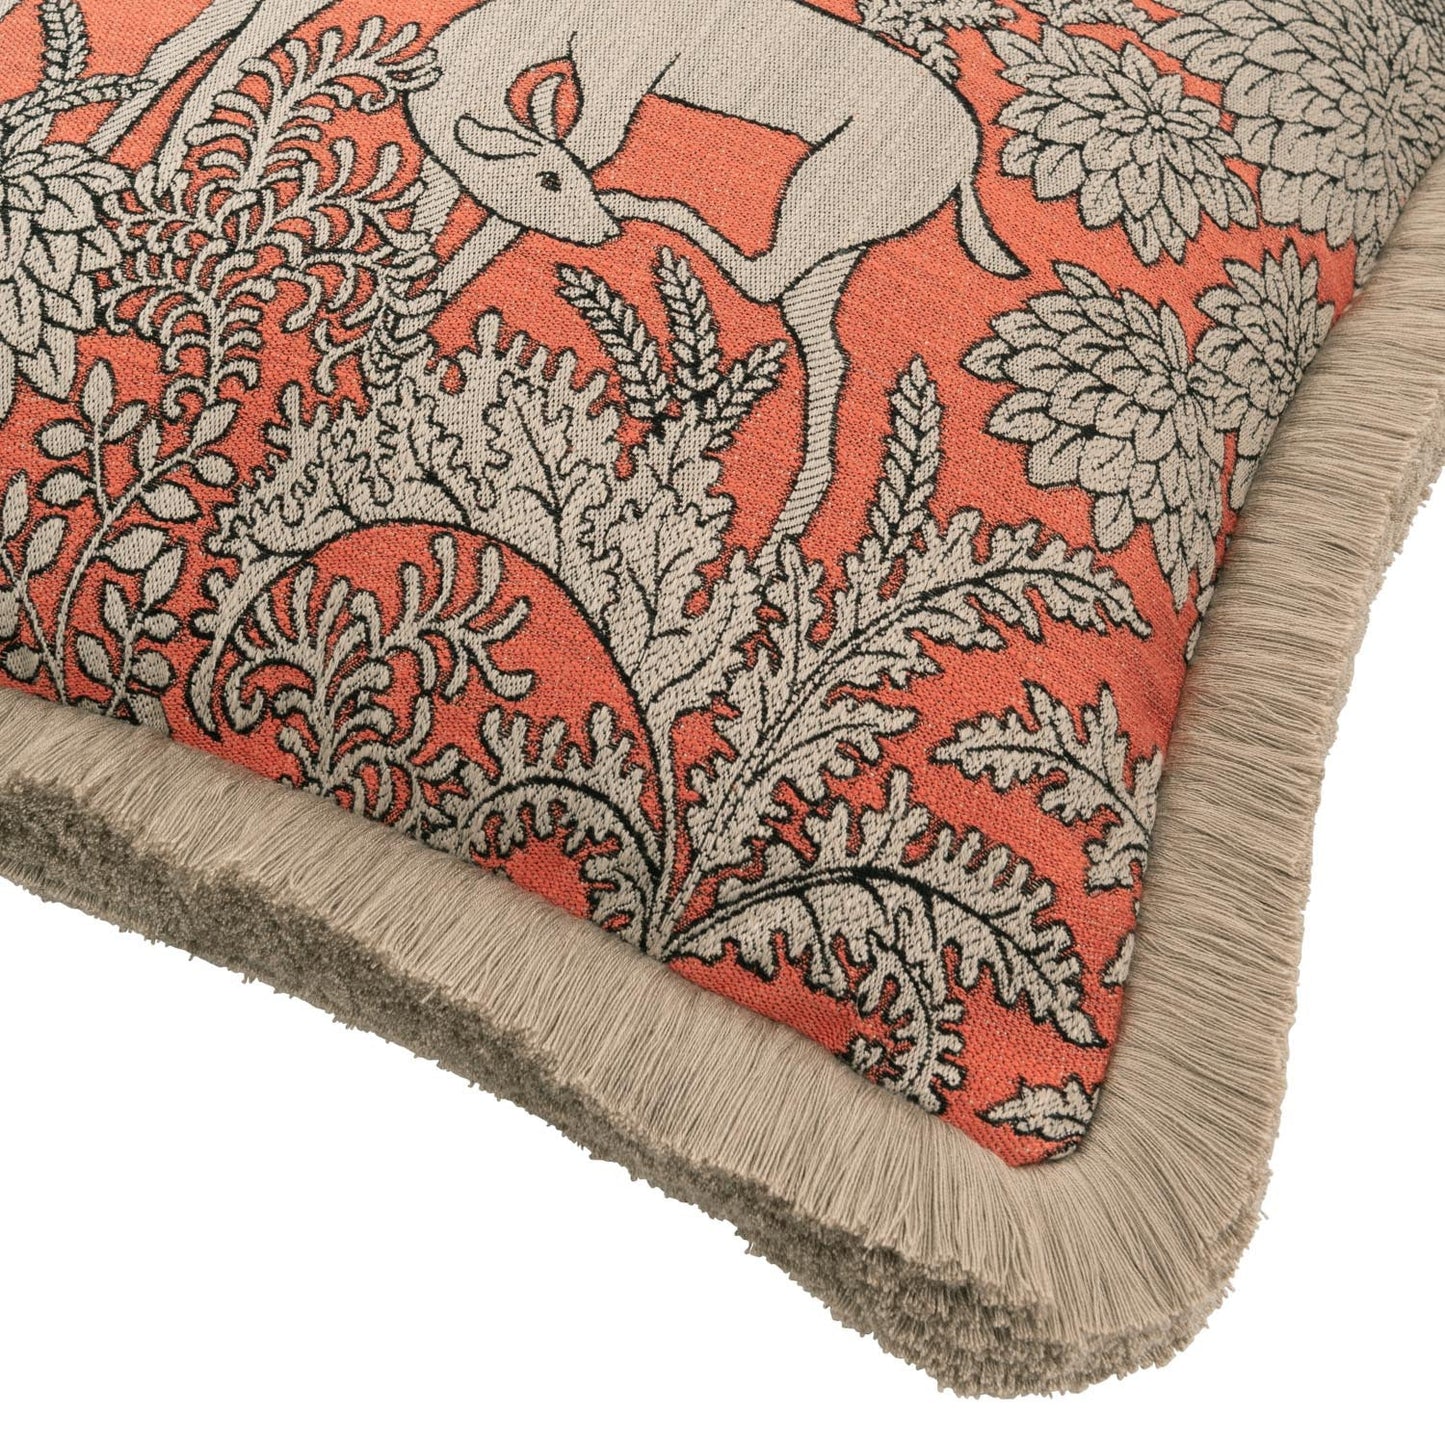 BALMORAL Spice Woven Cushion - Warner House